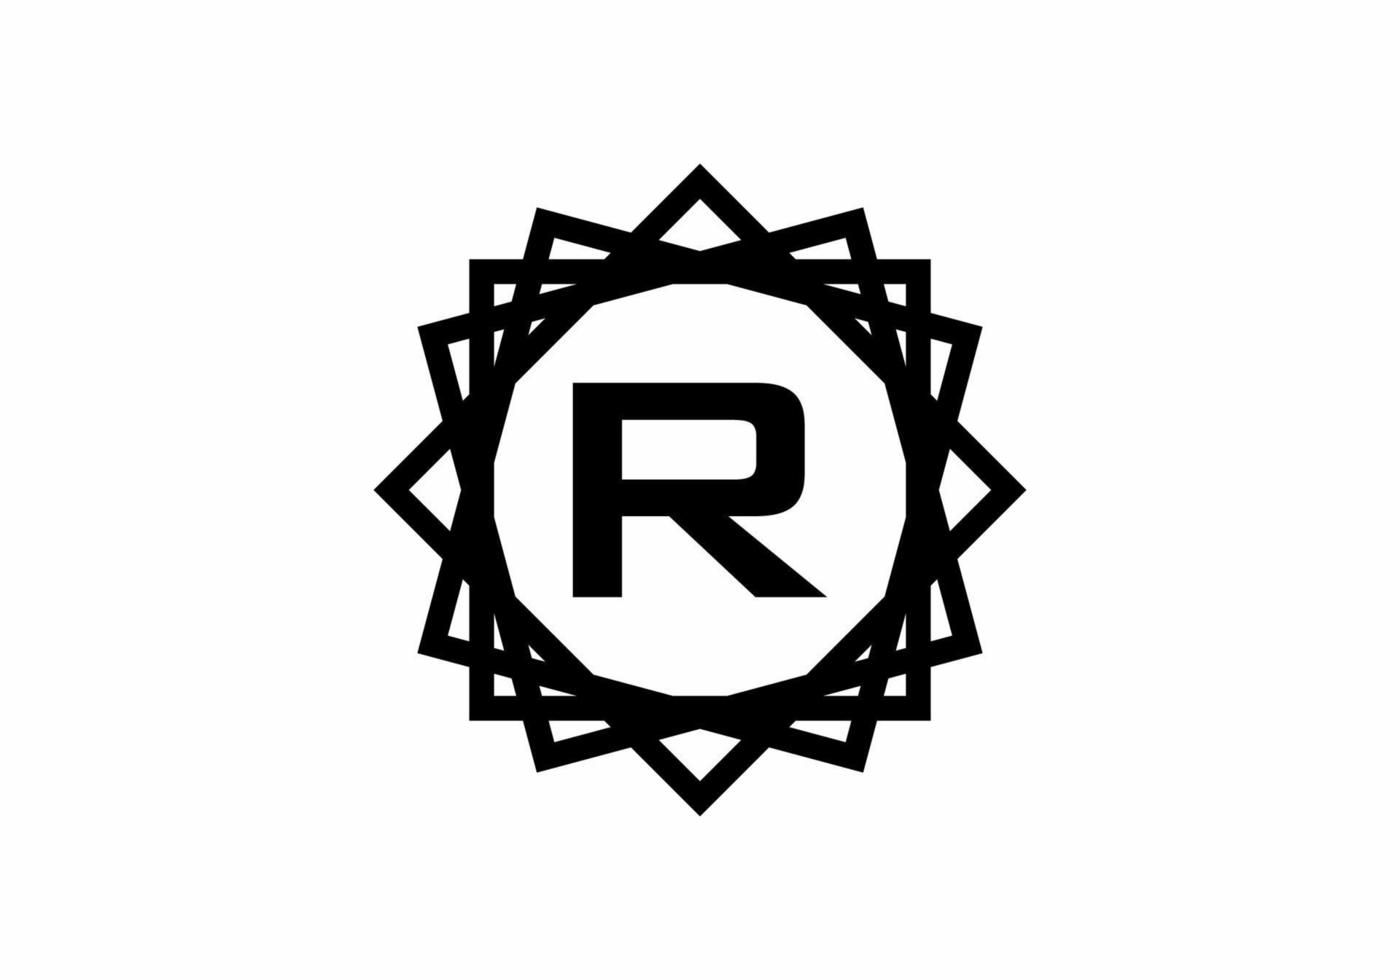 R initial letter in black frame vector logo